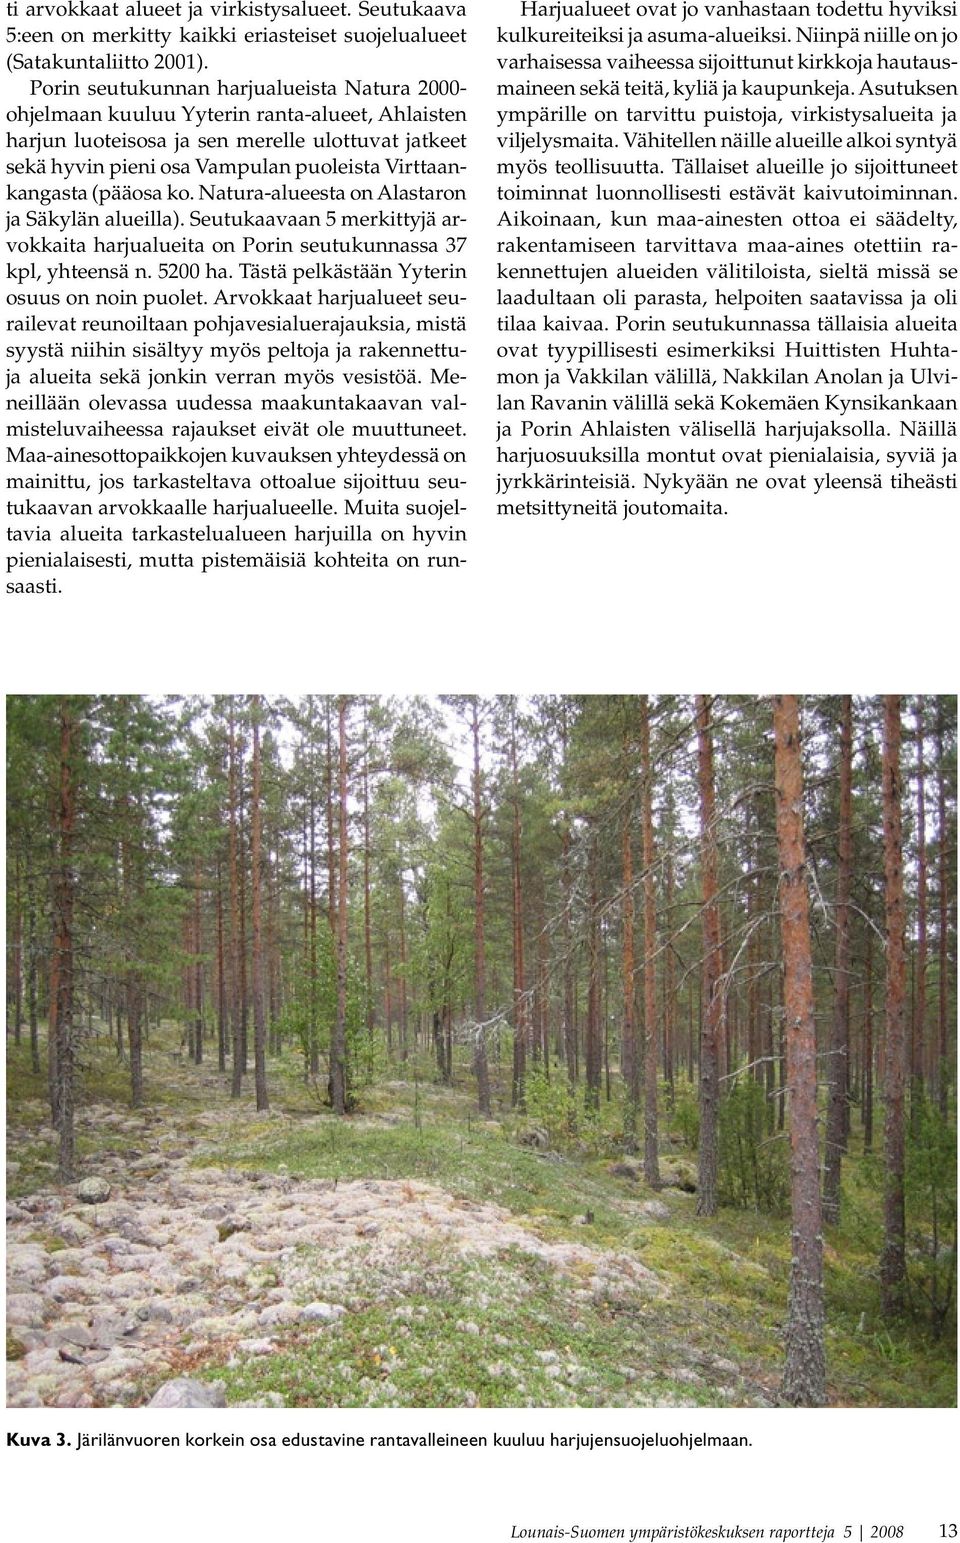 Virttaankangasta (pääosa ko. Natura-alueesta on Alastaron ja Säkylän alueilla). Seutukaavaan 5 merkittyjä arvokkaita harjualueita on Porin seutukunnassa 37 kpl, yhteensä n. 5200 ha.